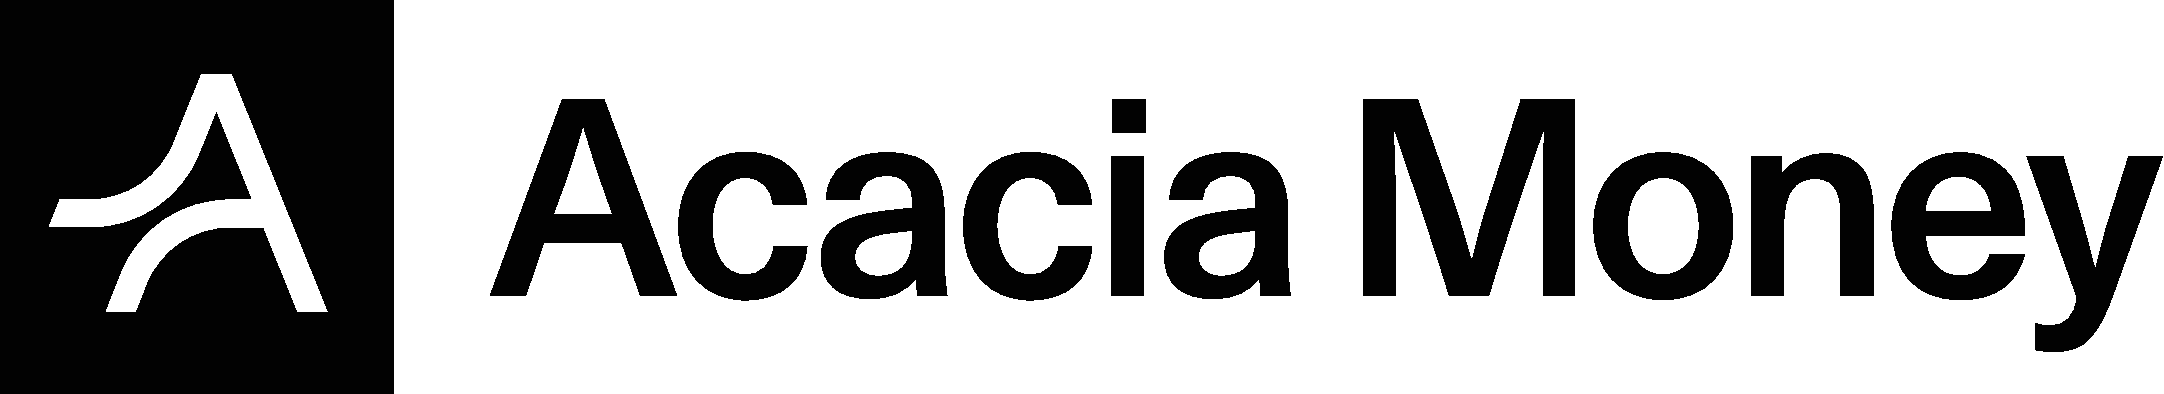 Acacia Money Logo